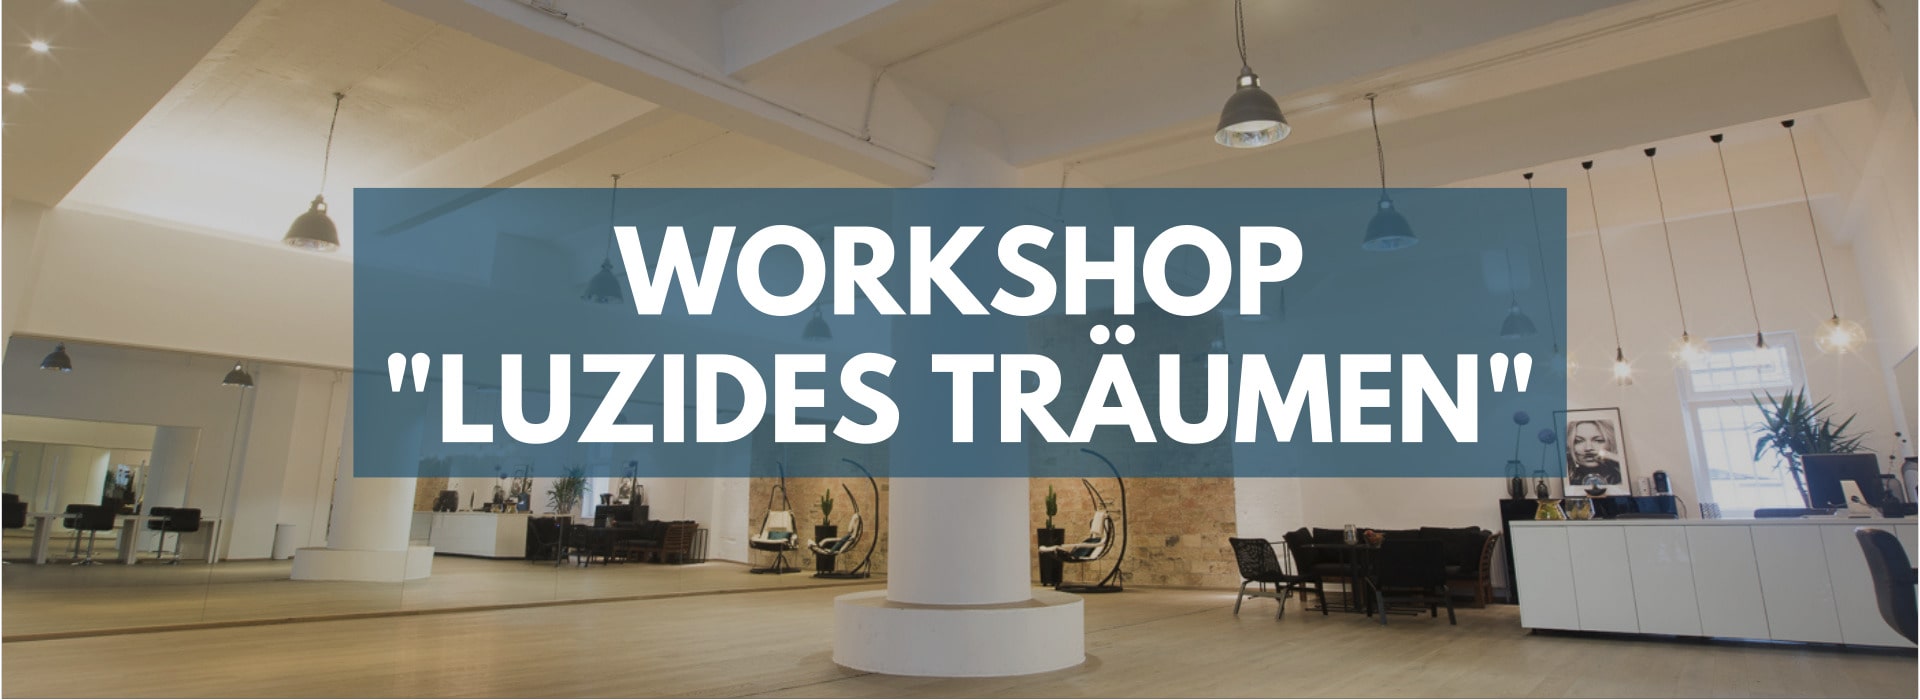 Workshop "Luzides Träumen"